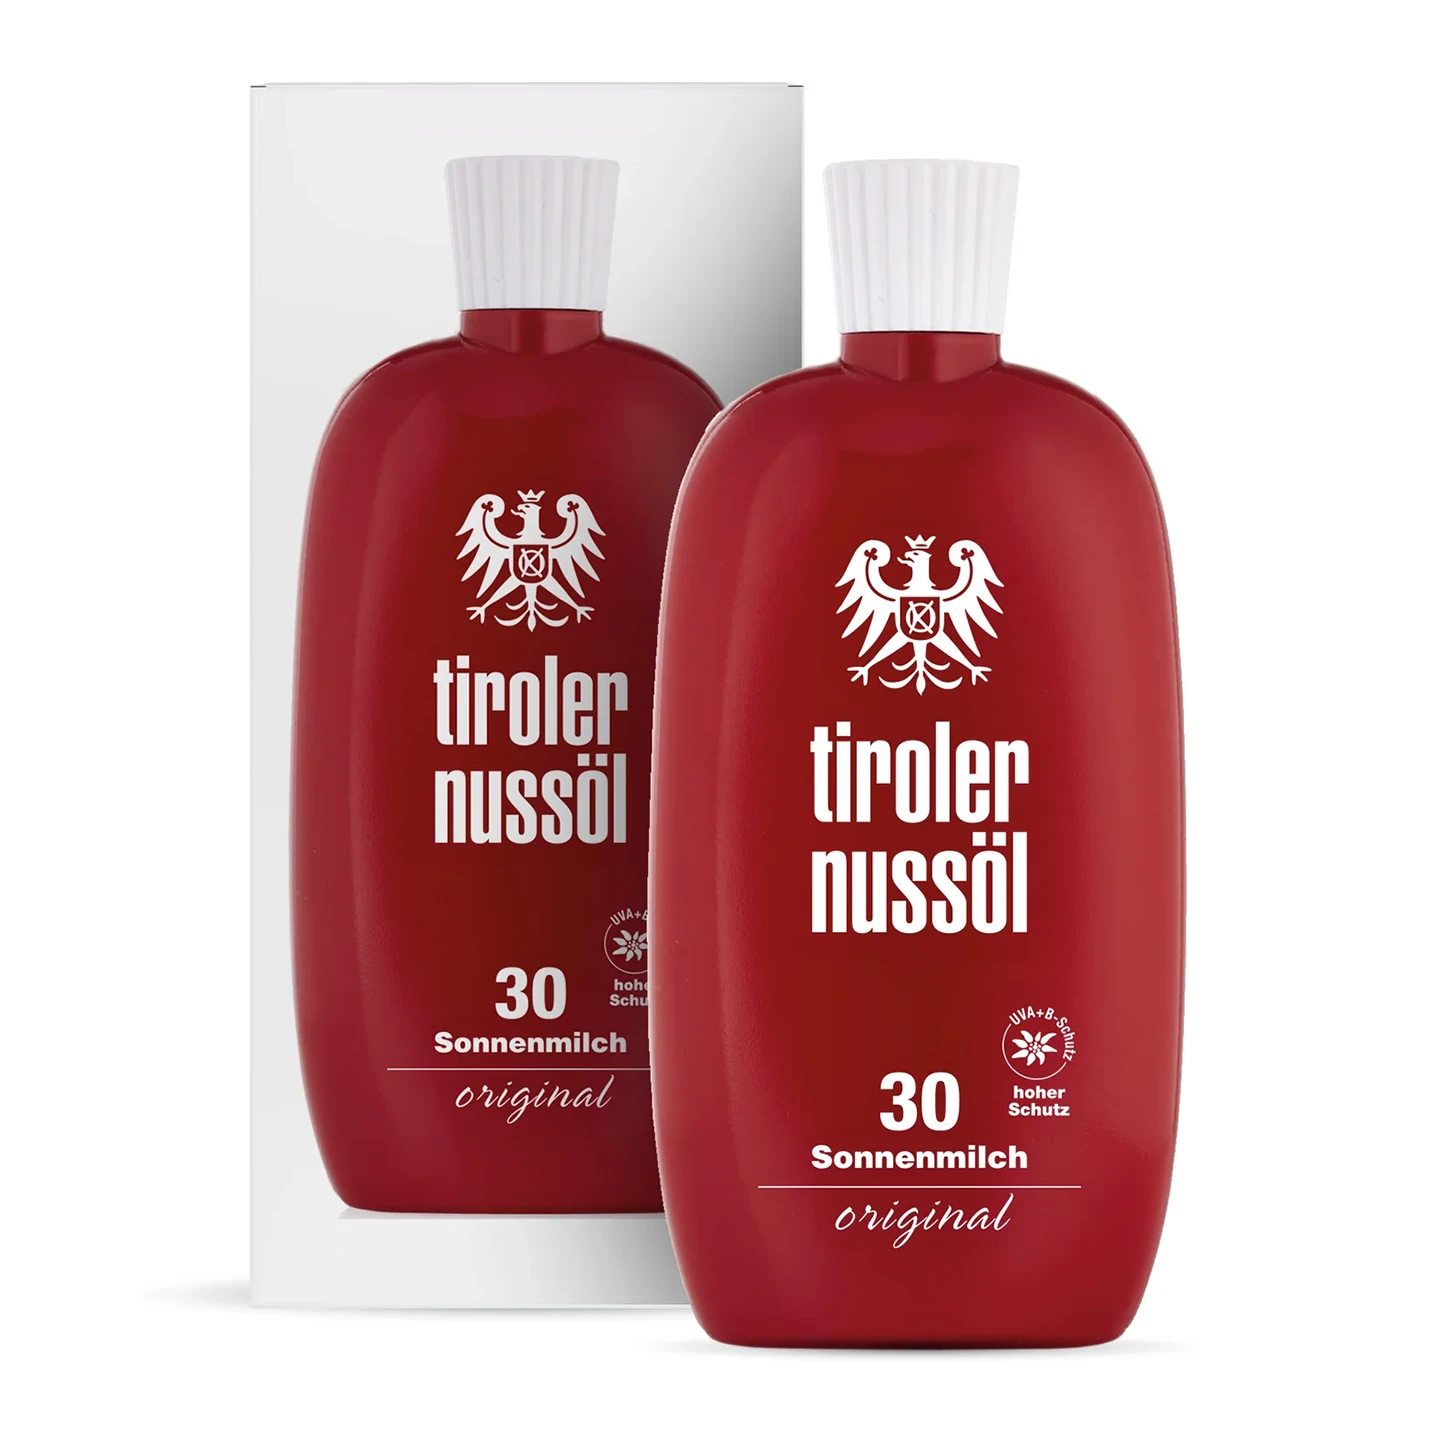 Tiroler Nussöl Original Sonnenmilch Lichtschutzfaktor 30 – Tube und Verpackung Vorderansicht